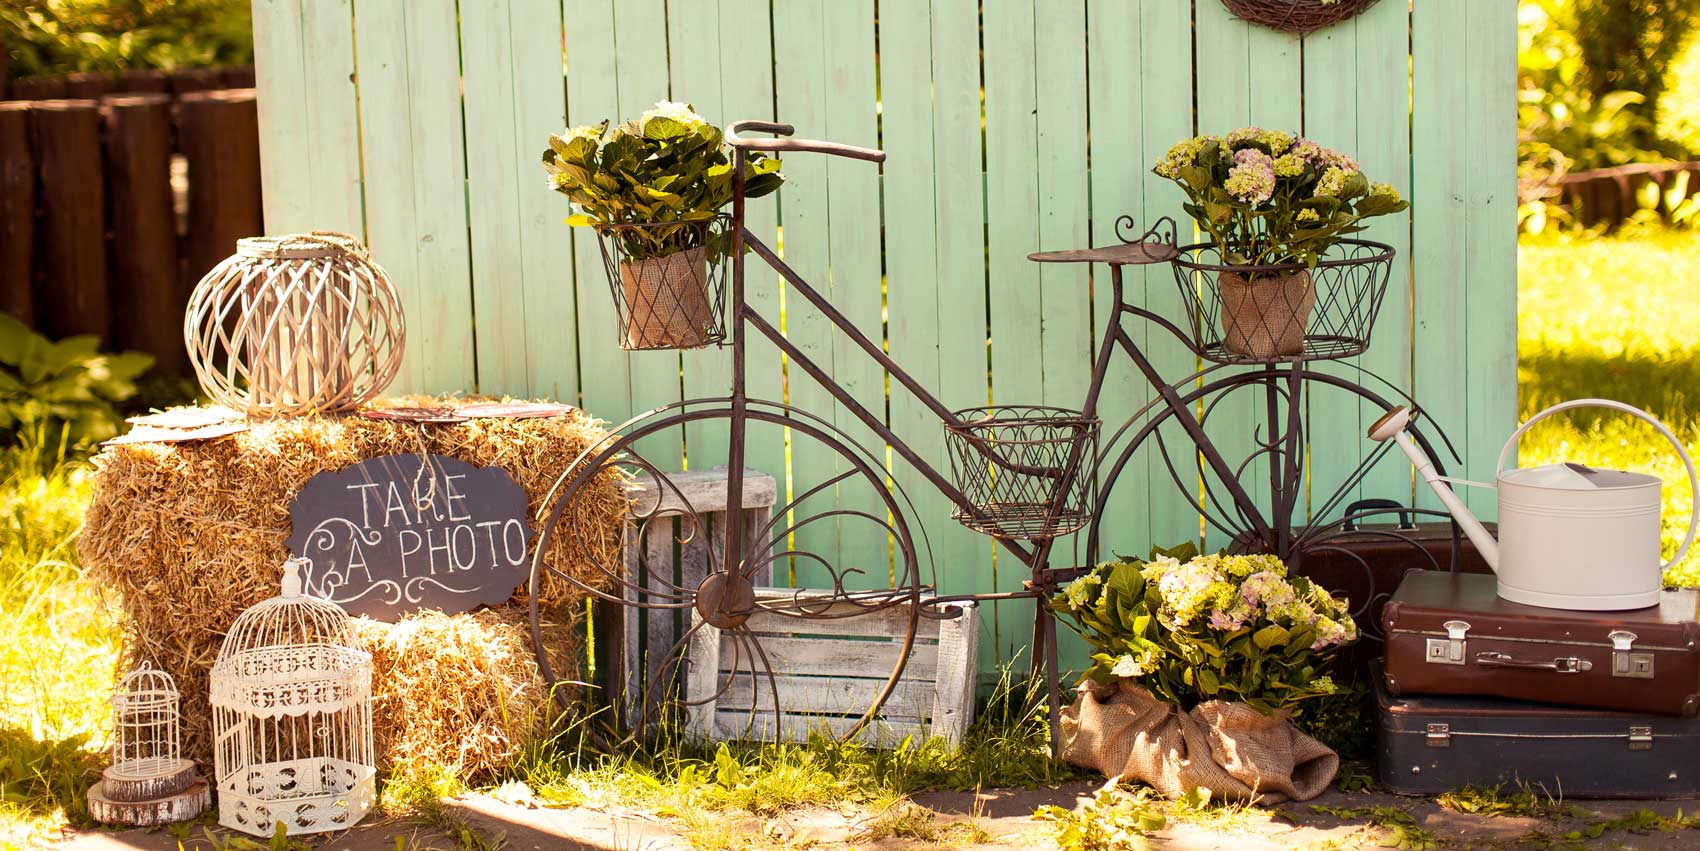 Kate-Ostern-Frühlingsgras mit Fahrrad-Hintergrund für Fotografie